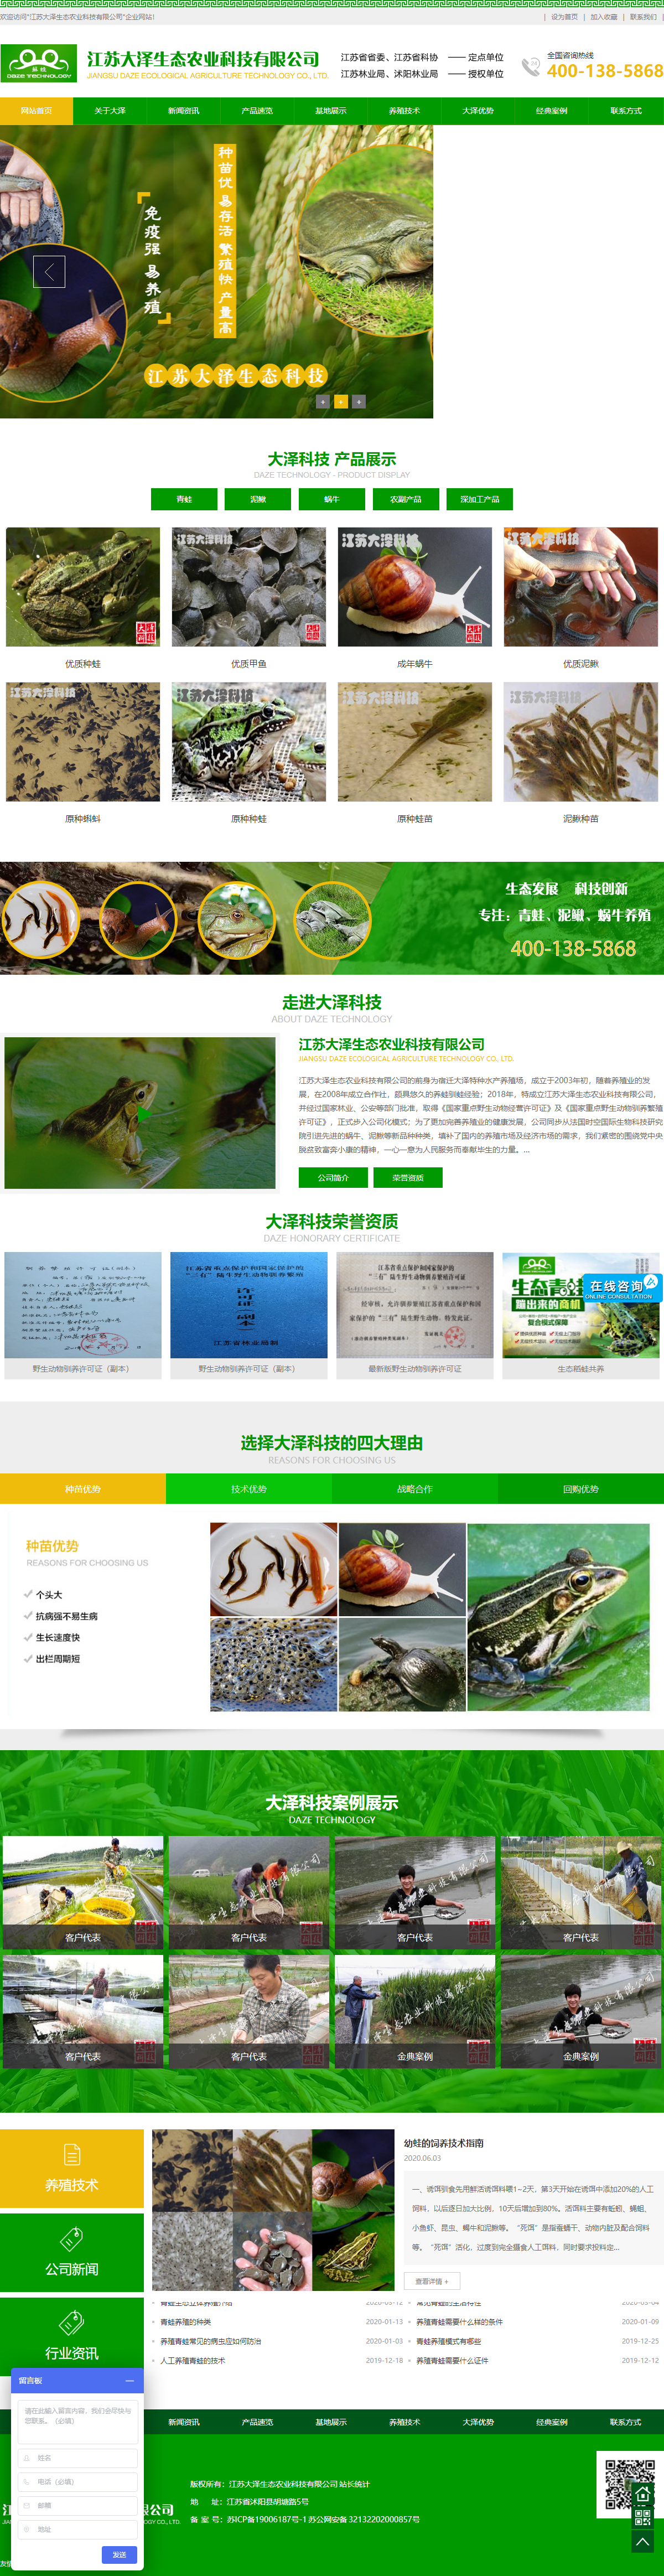 江苏大泽生态农业科技有限公司网站案例